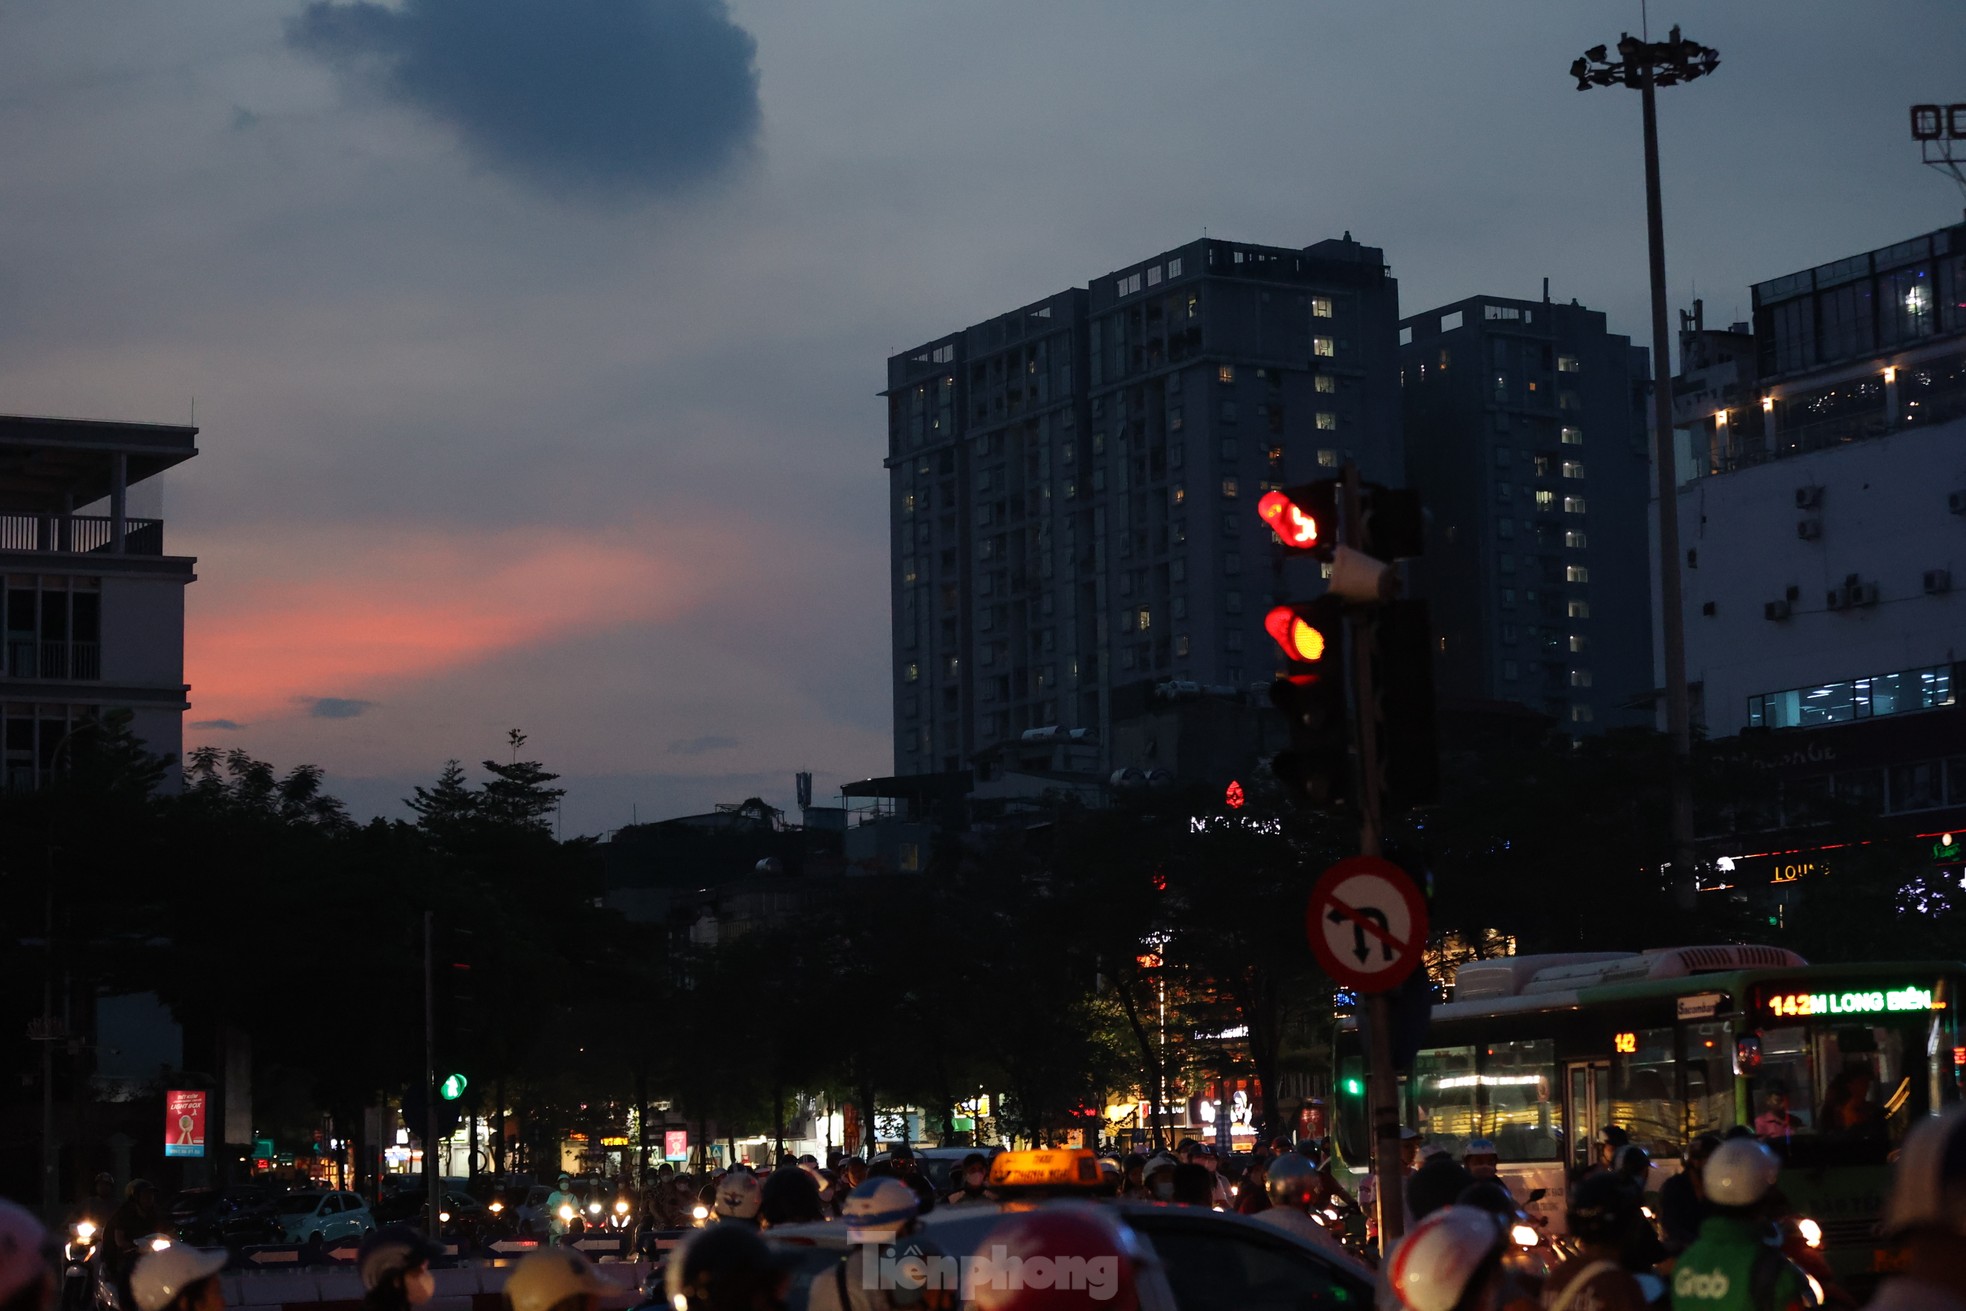 Đường phố Hà Nội bỗng tối om vì phải cắt giảm điện - Ảnh 3.